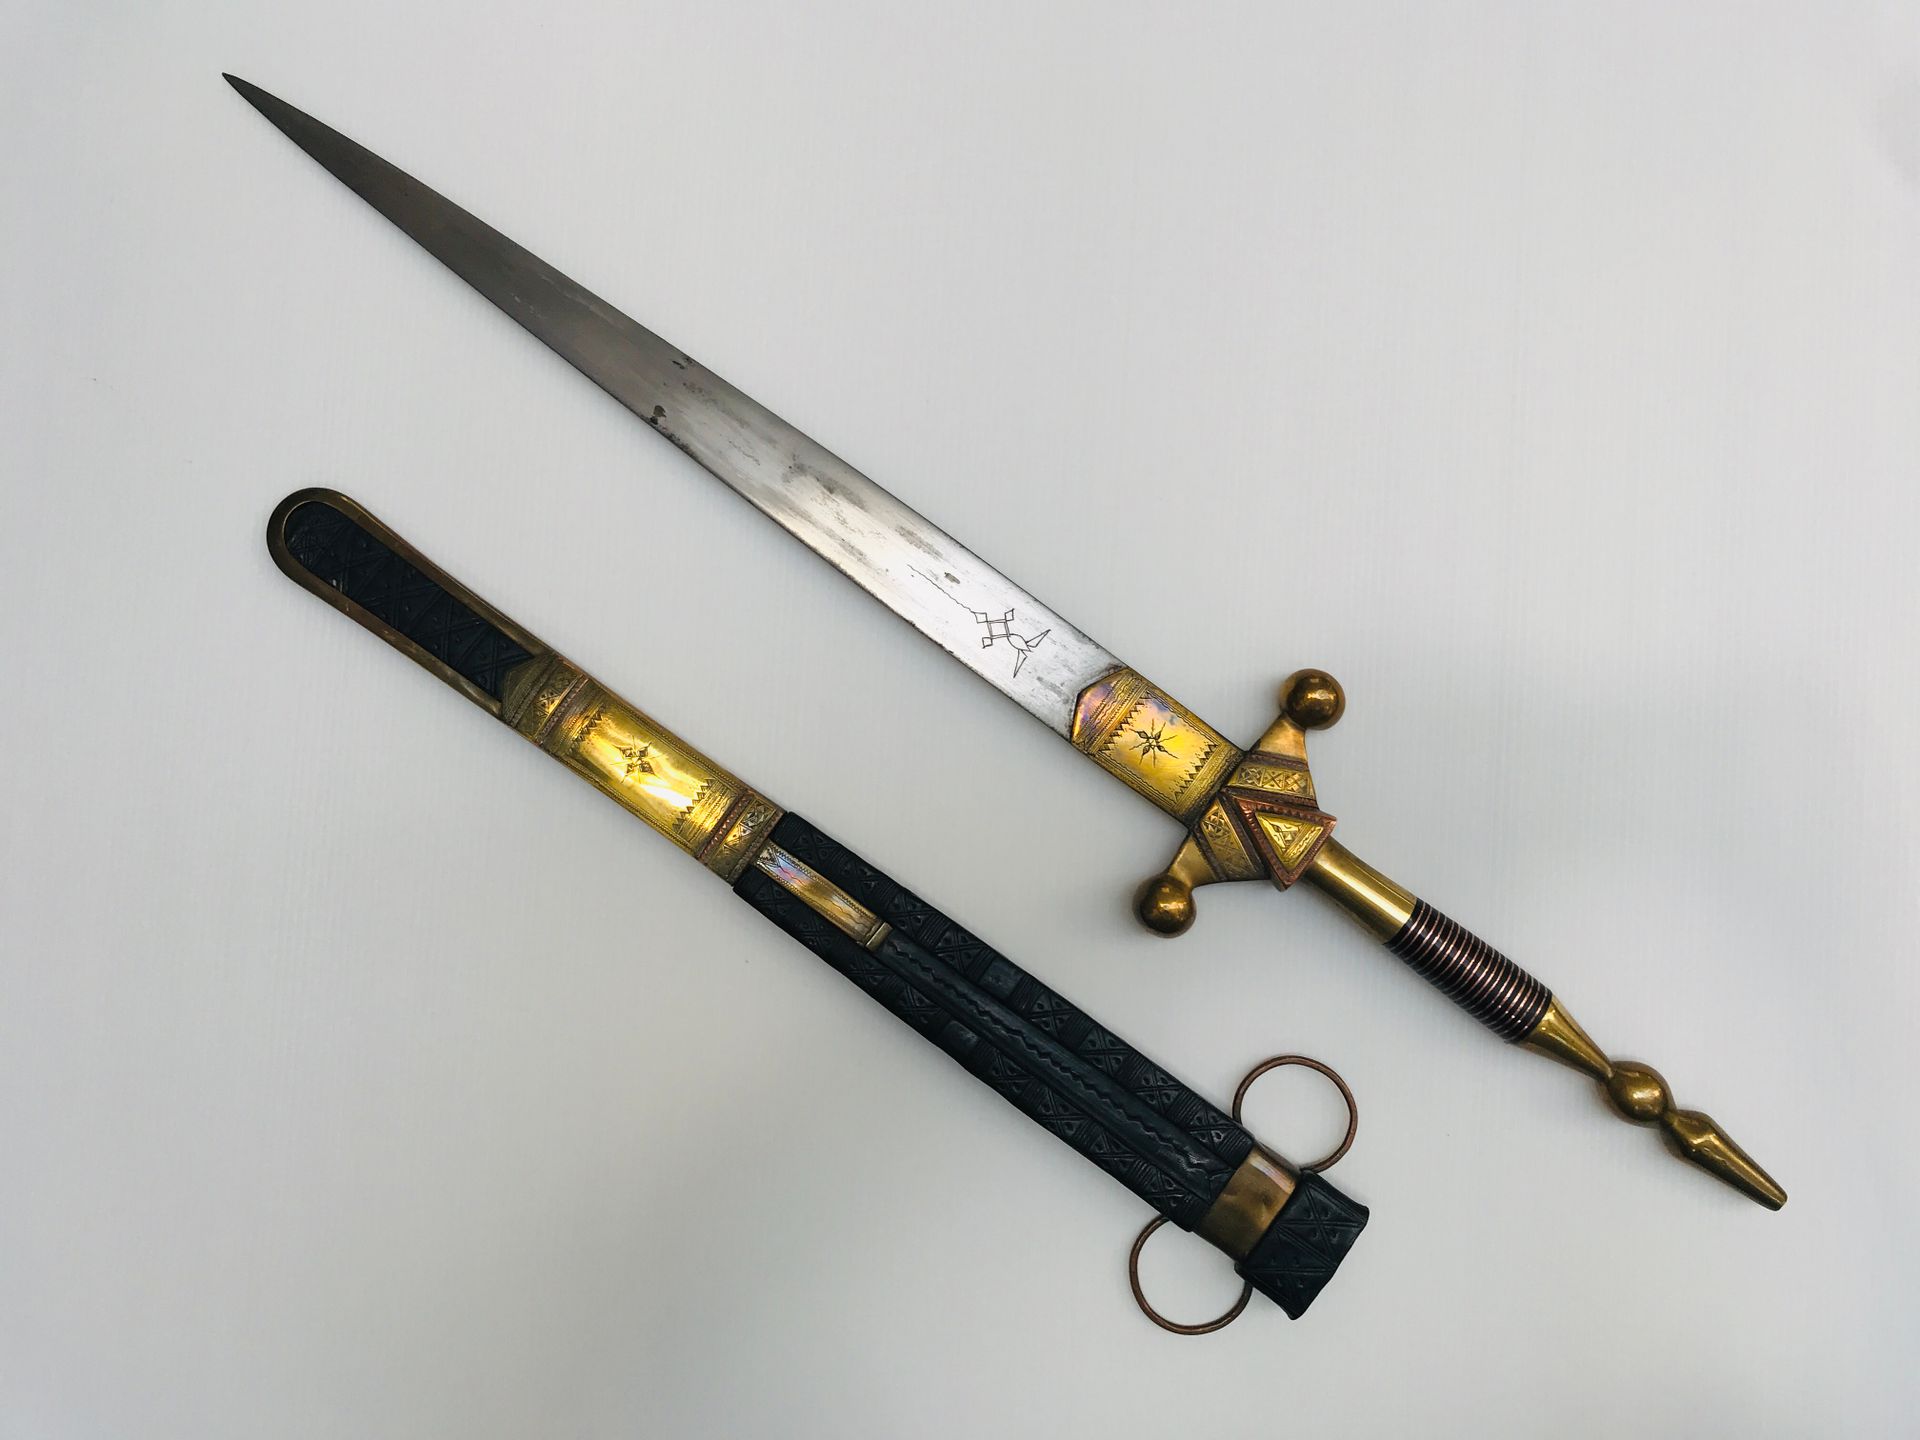 Épée touareg brass and copper engraved, leather sheath

L. 77 cm